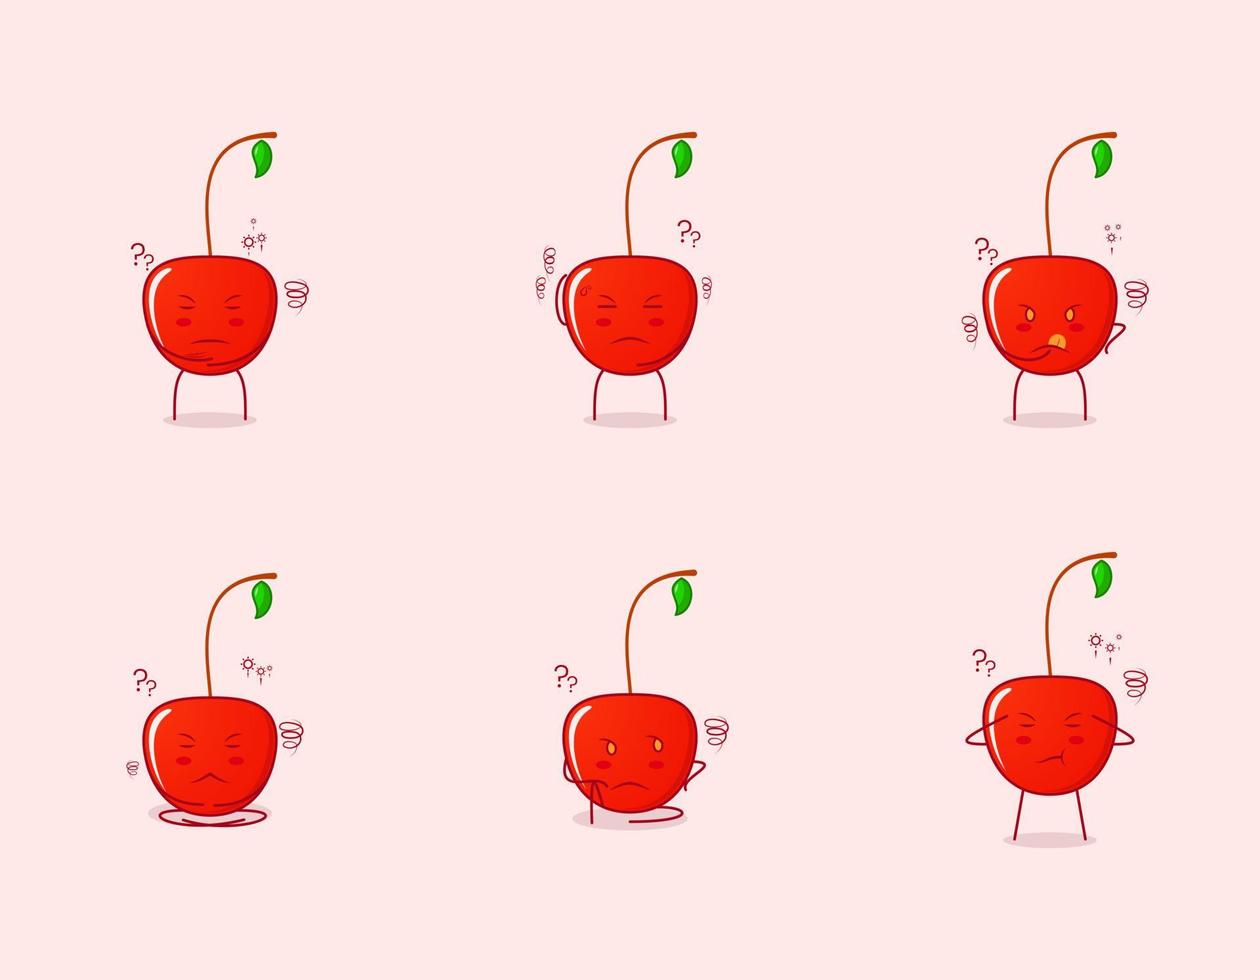 raccolta di simpatico personaggio dei cartoni animati di ciliegia con espressione pensante. adatto per emoticon, logo, simbolo e mascotte. come emoticon, adesivi o logo di frutta vettore